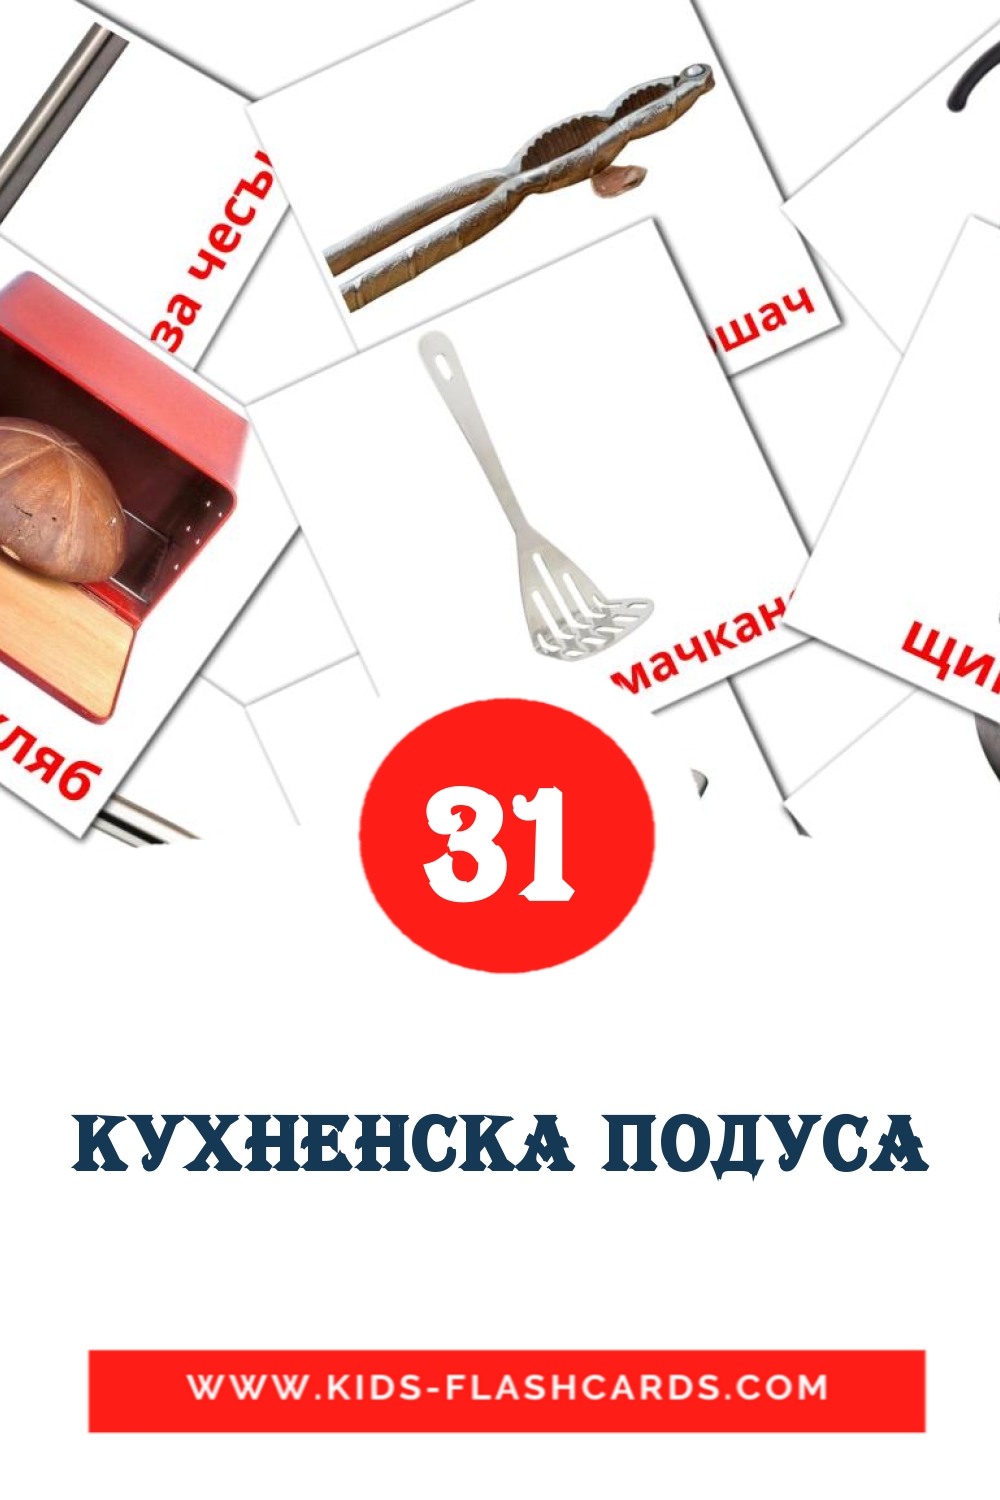 31 cartes illustrées de Кухненска подуса pour la maternelle en bulgare